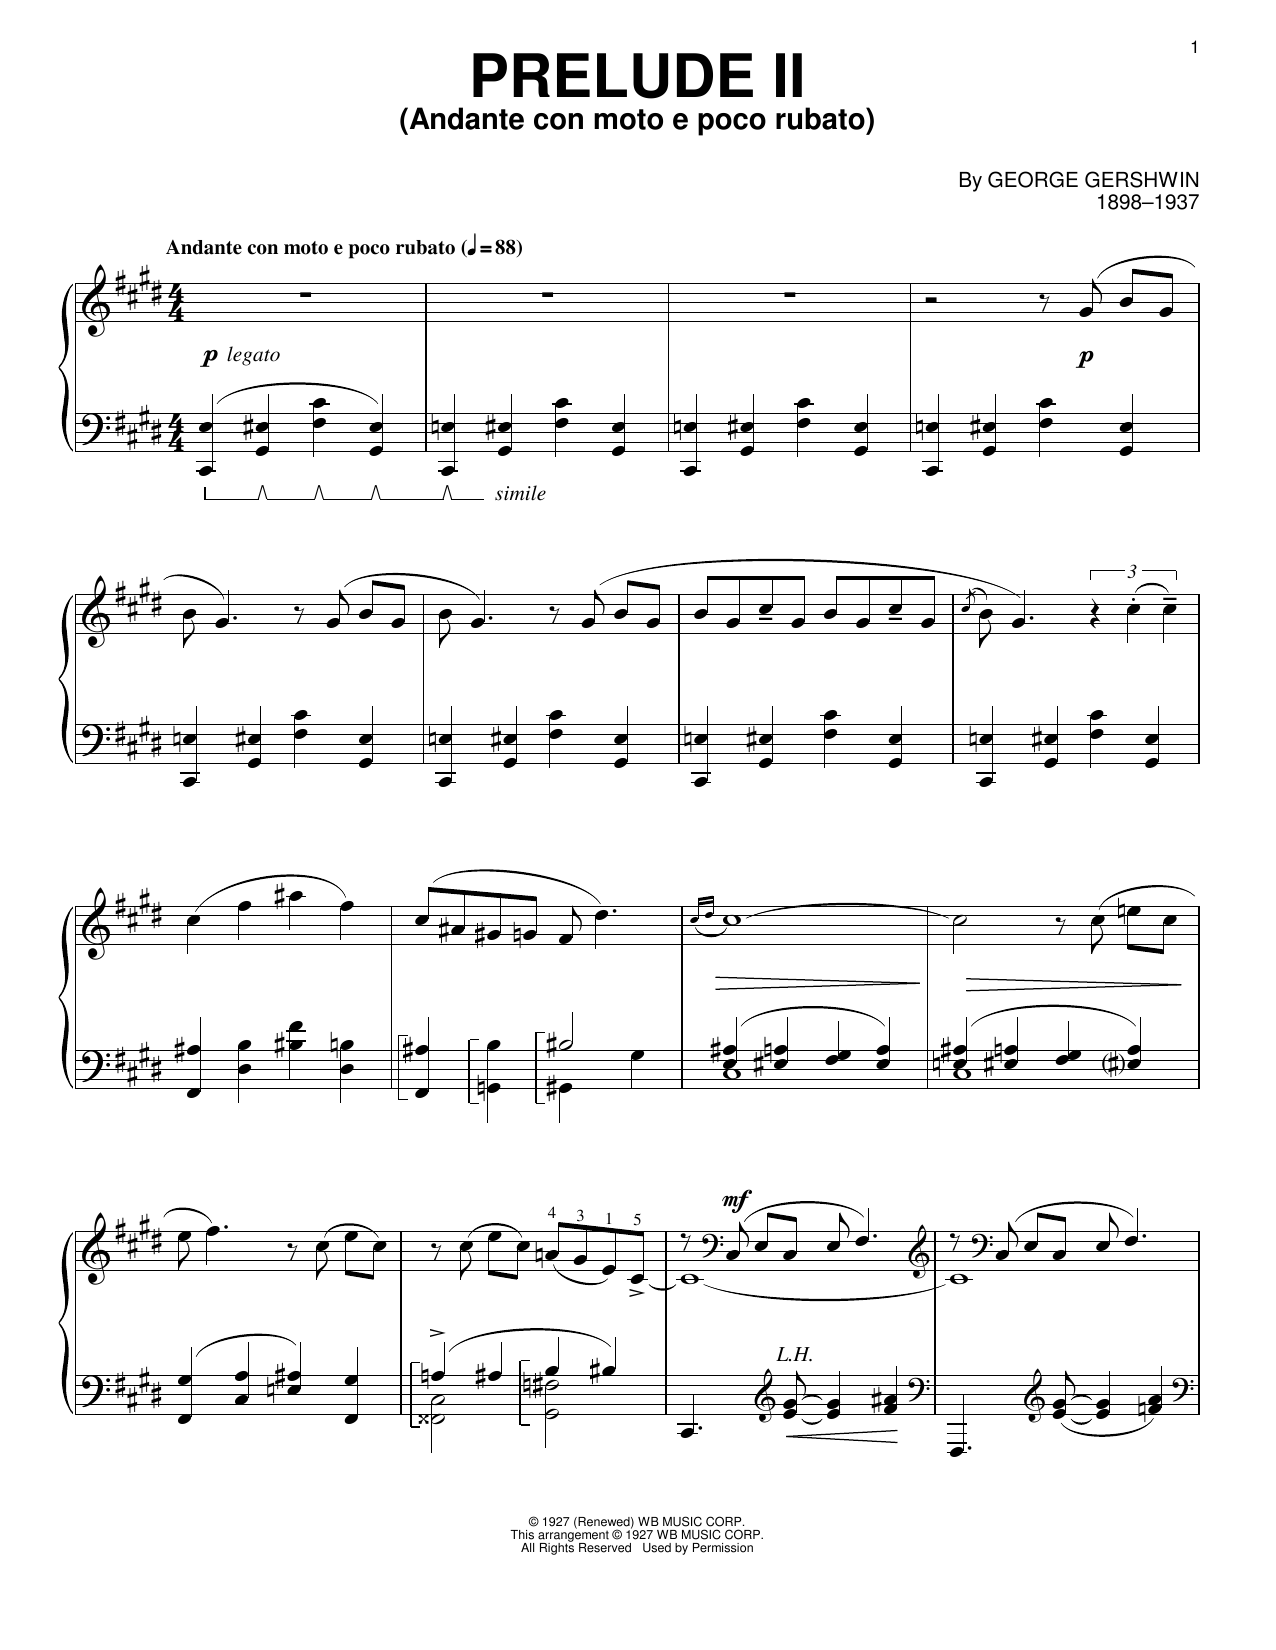 George Gershwin Prelude II (Andante Con Moto E Poco Rubato) Sheet Music Notes & Chords for Violin and Piano - Download or Print PDF